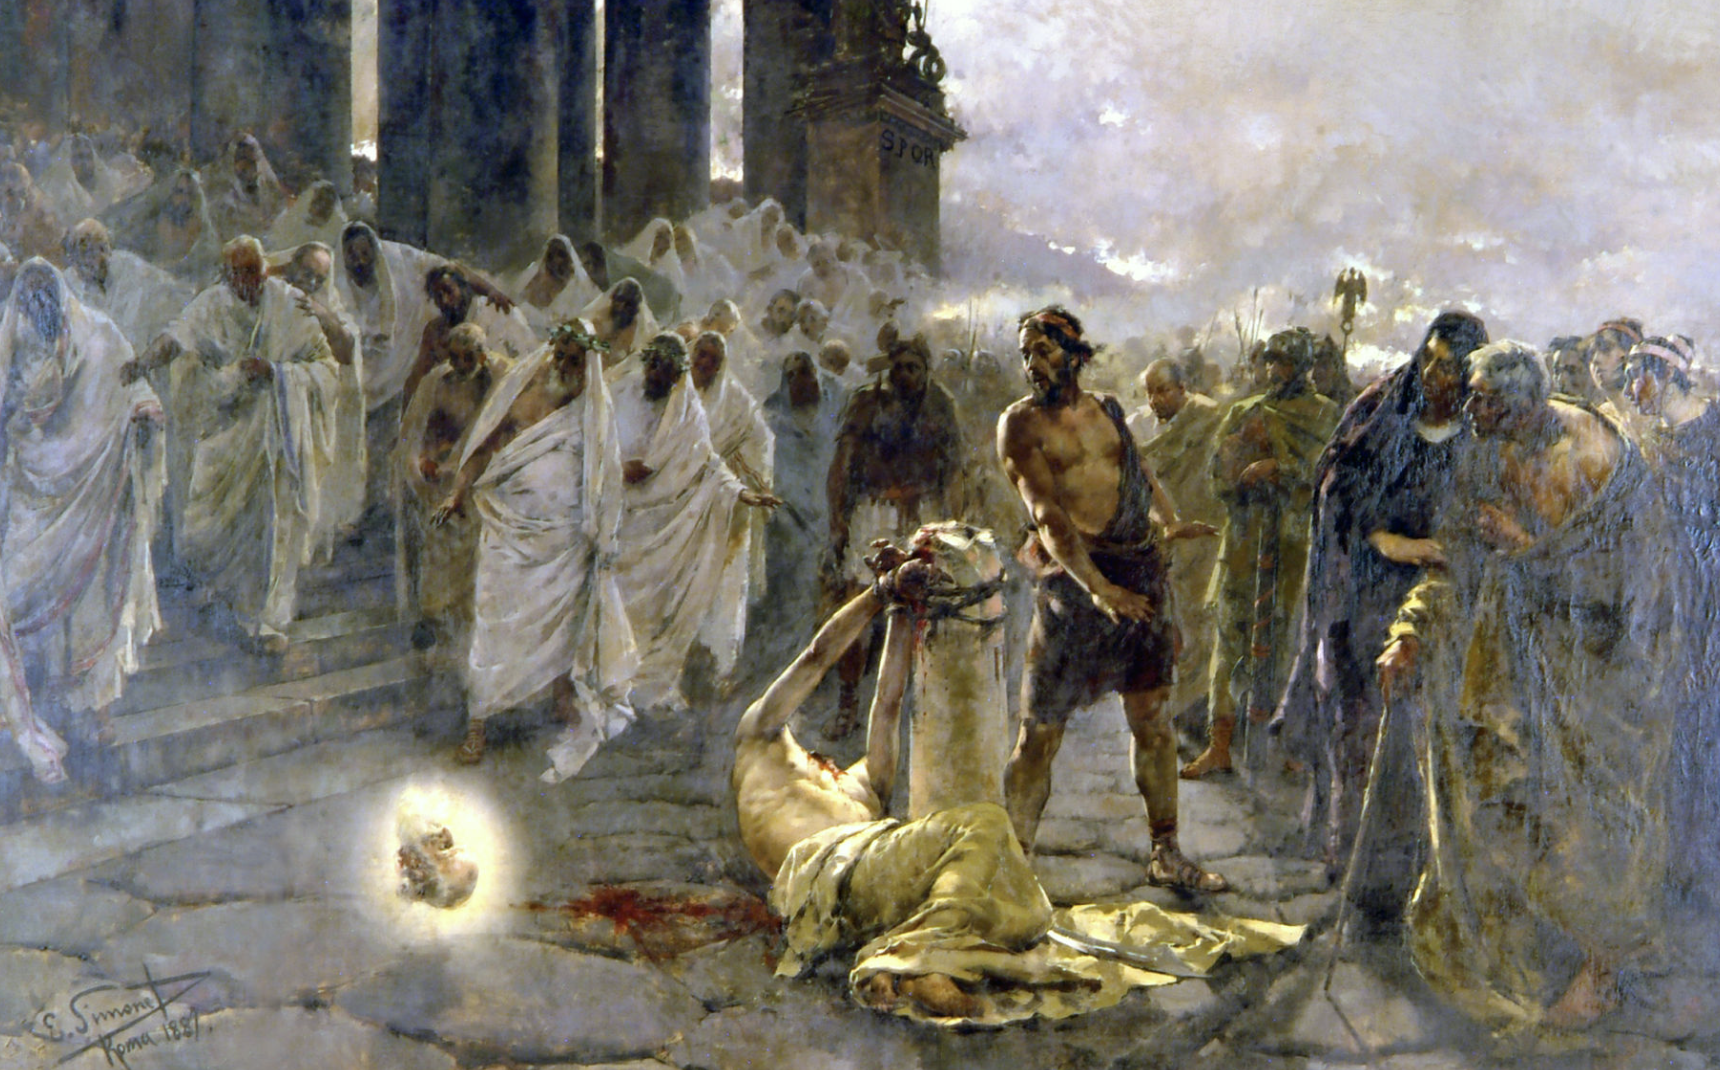 Картина "Усекновение главы св. Павла" (1887) Энрике Симоне © Web Gallery of Art (WGA)